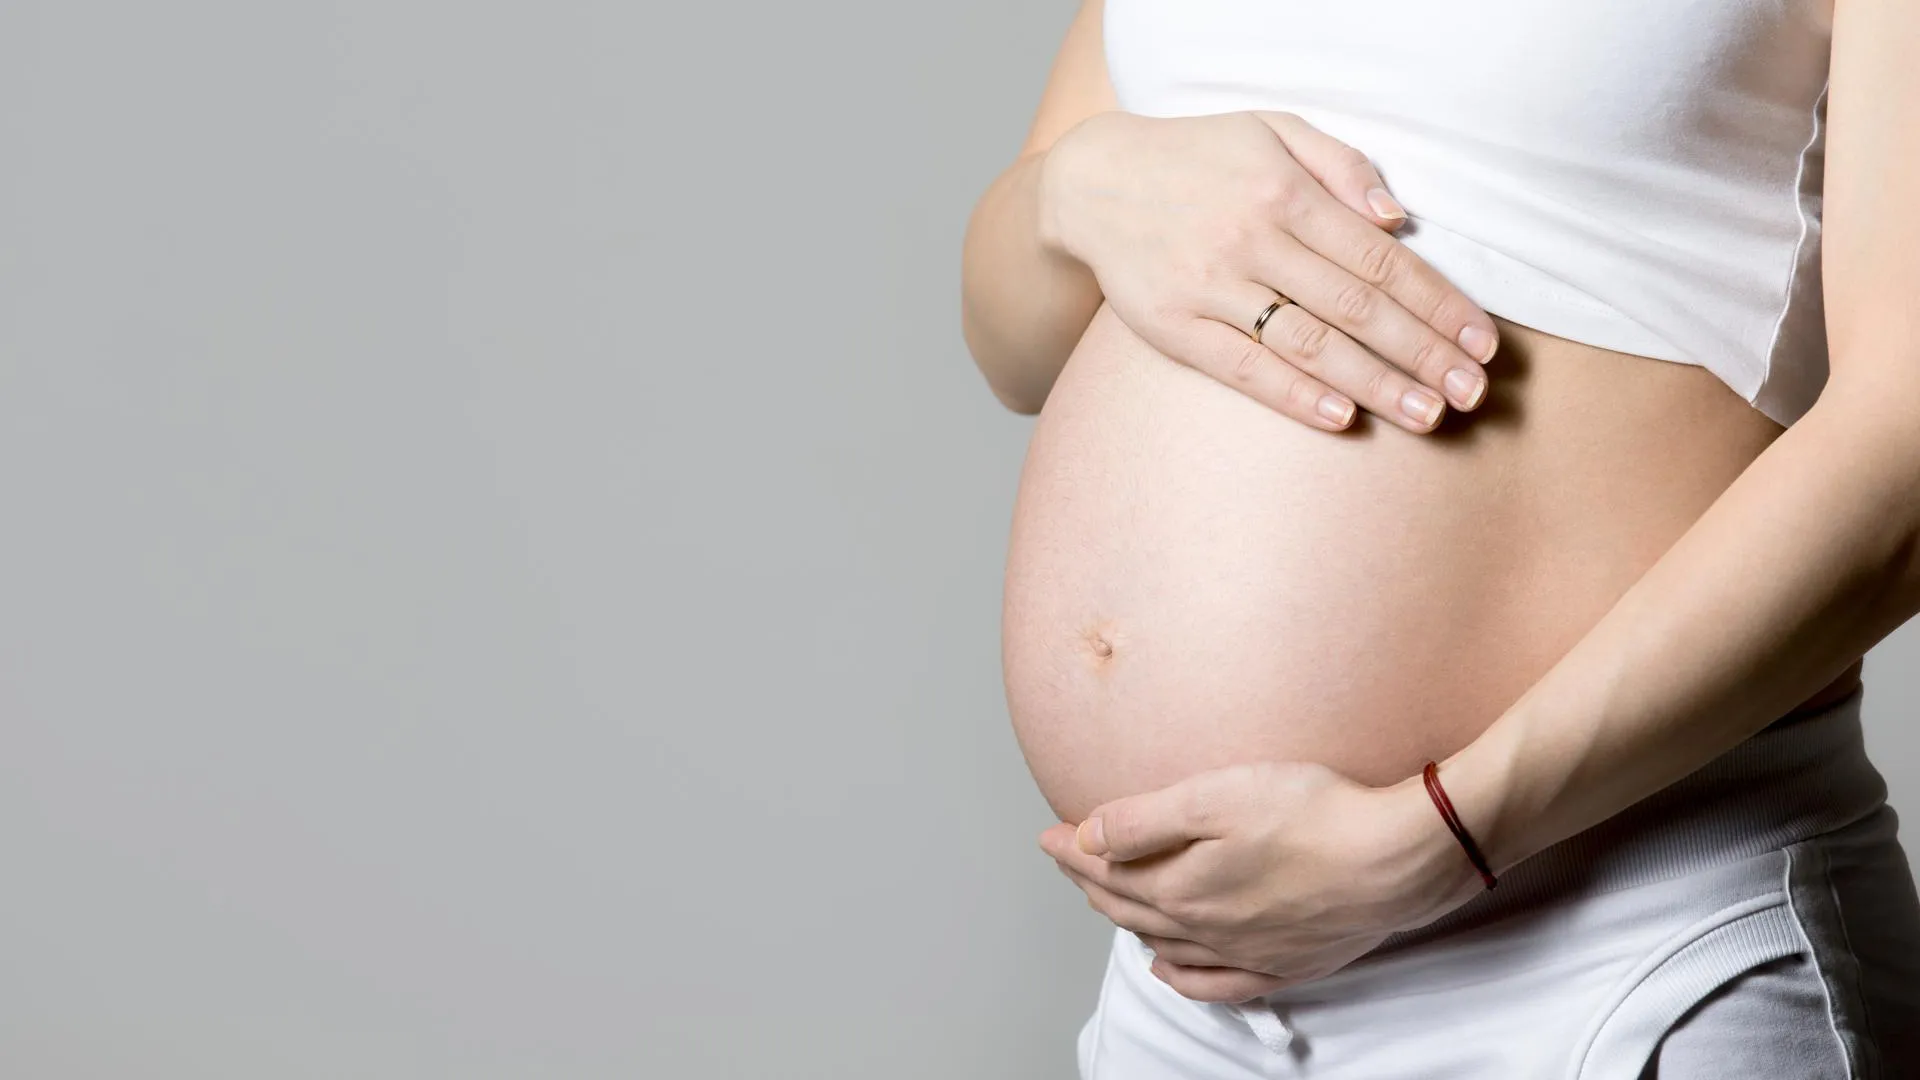 «Рада новому статусу мамы». Телеведущая Ромашкина сообщила о беременности